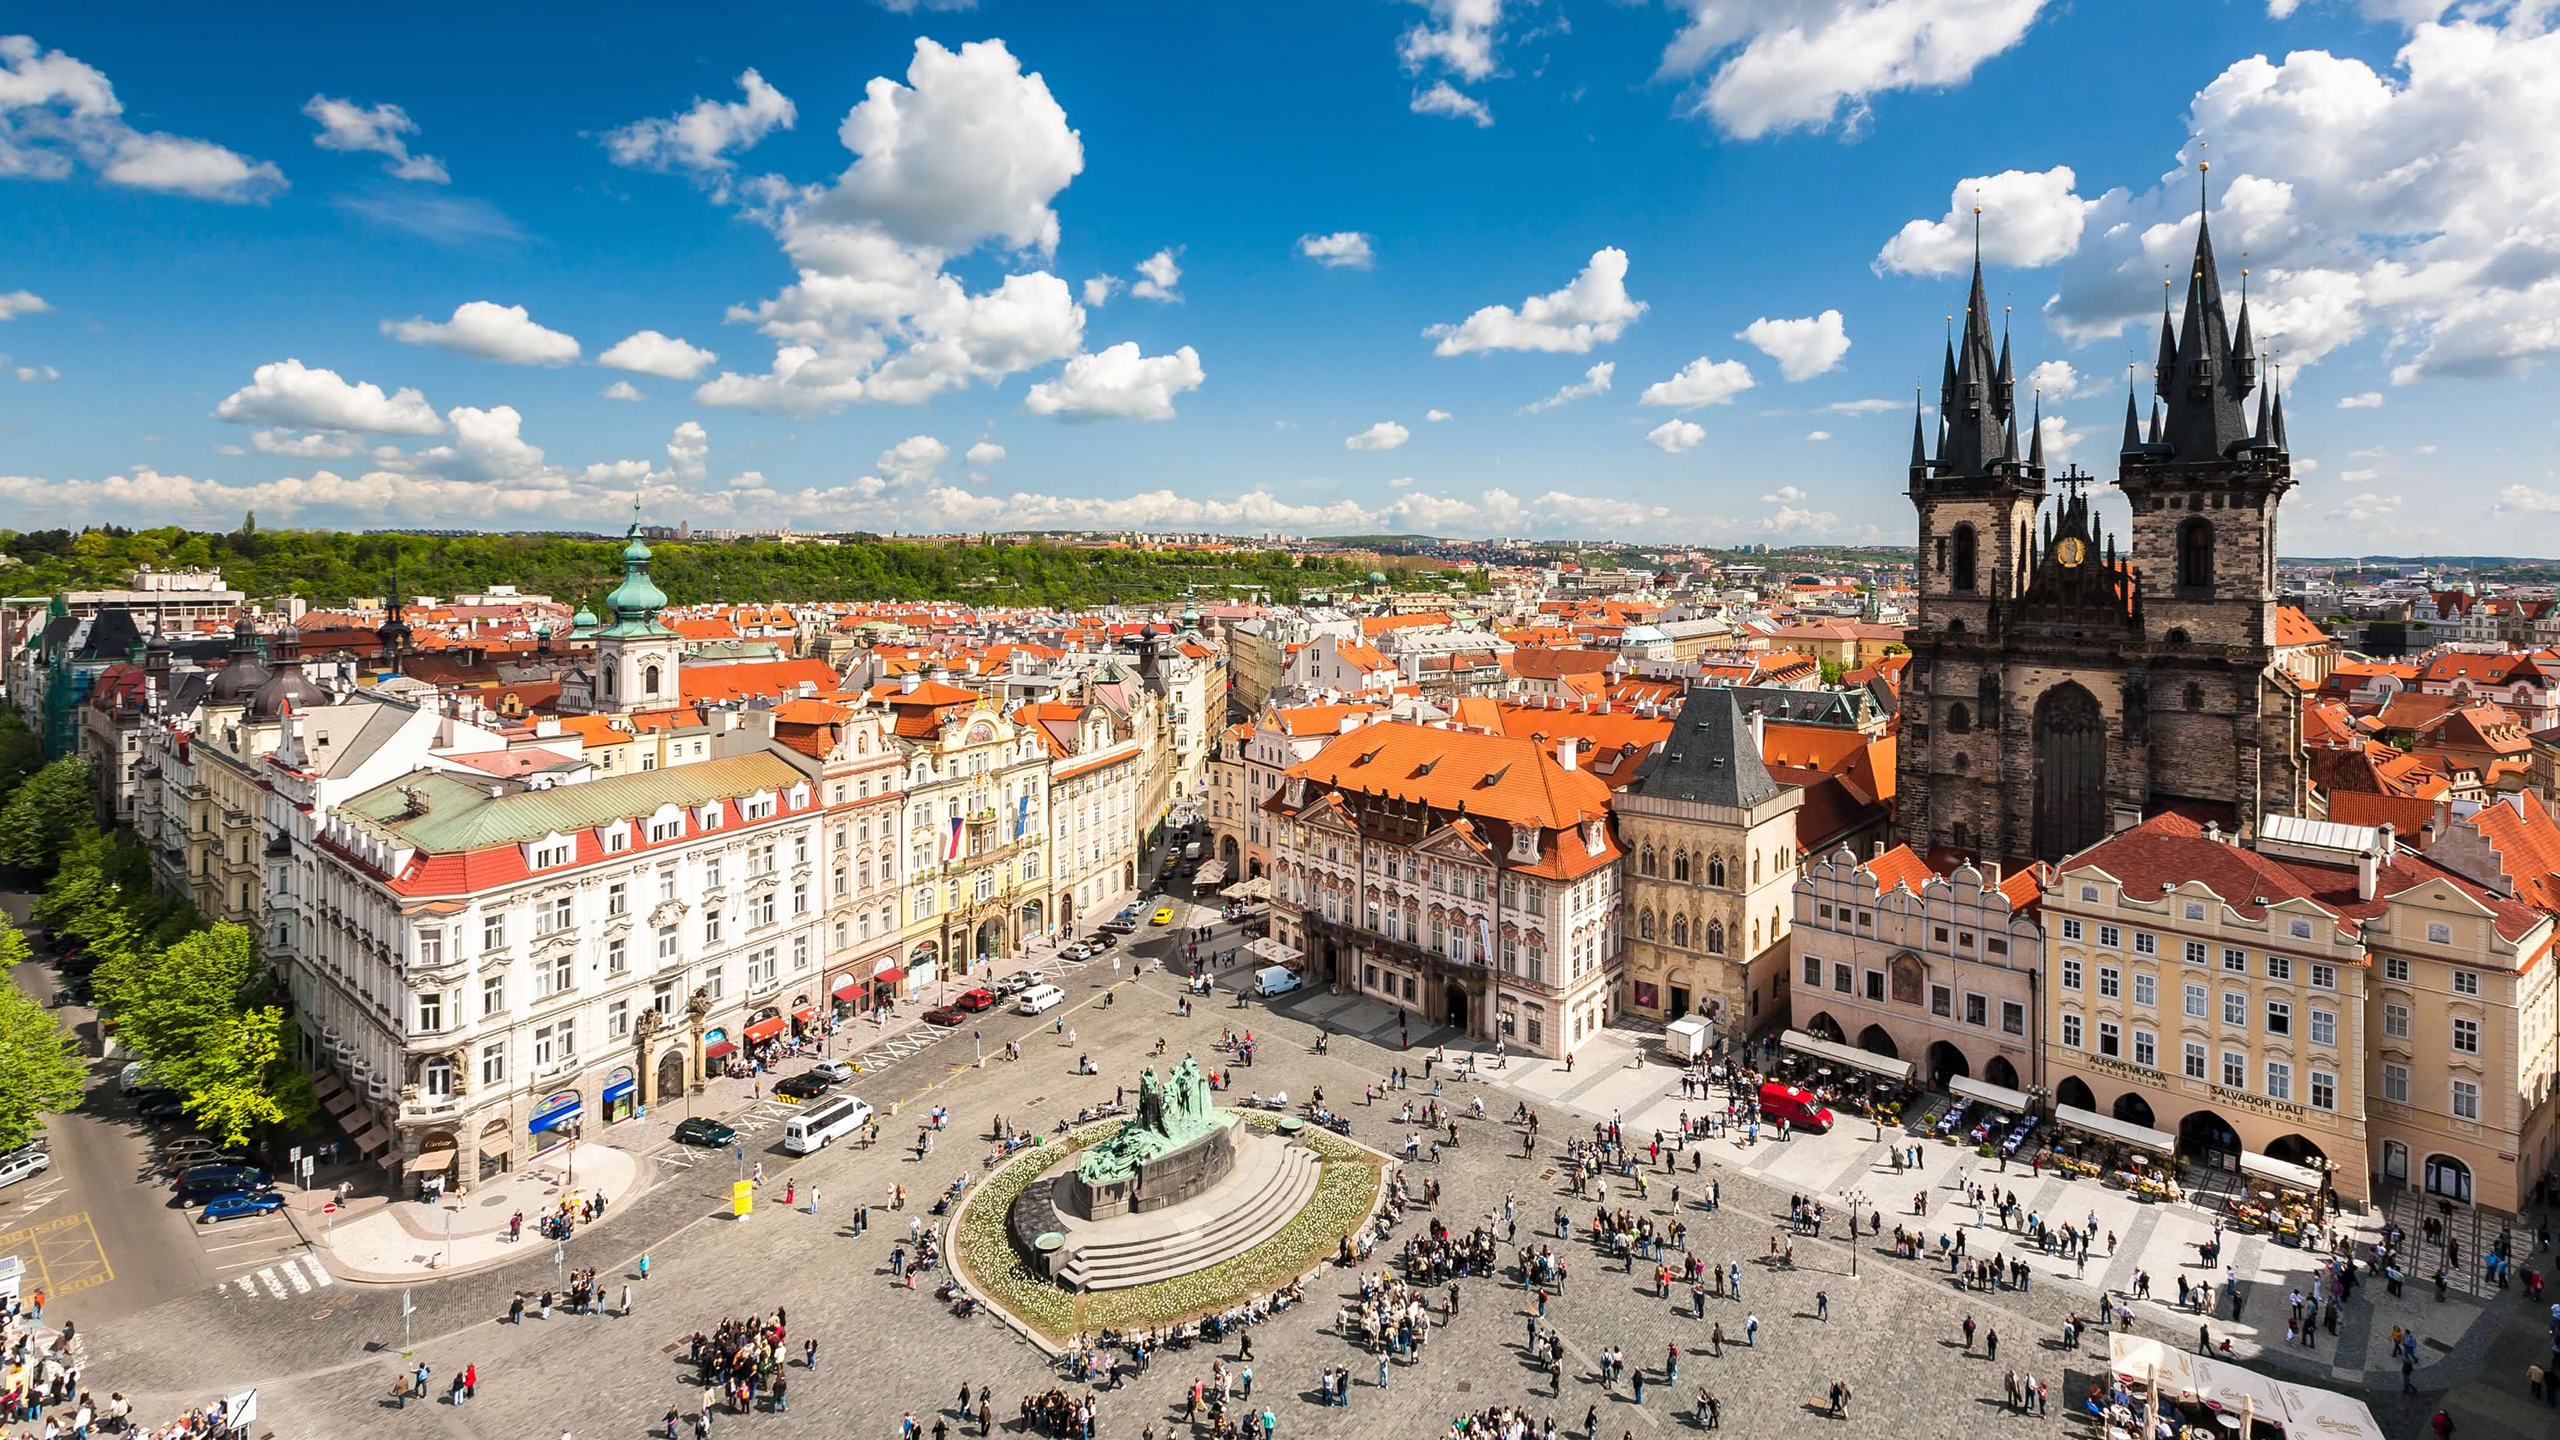 Prague city center